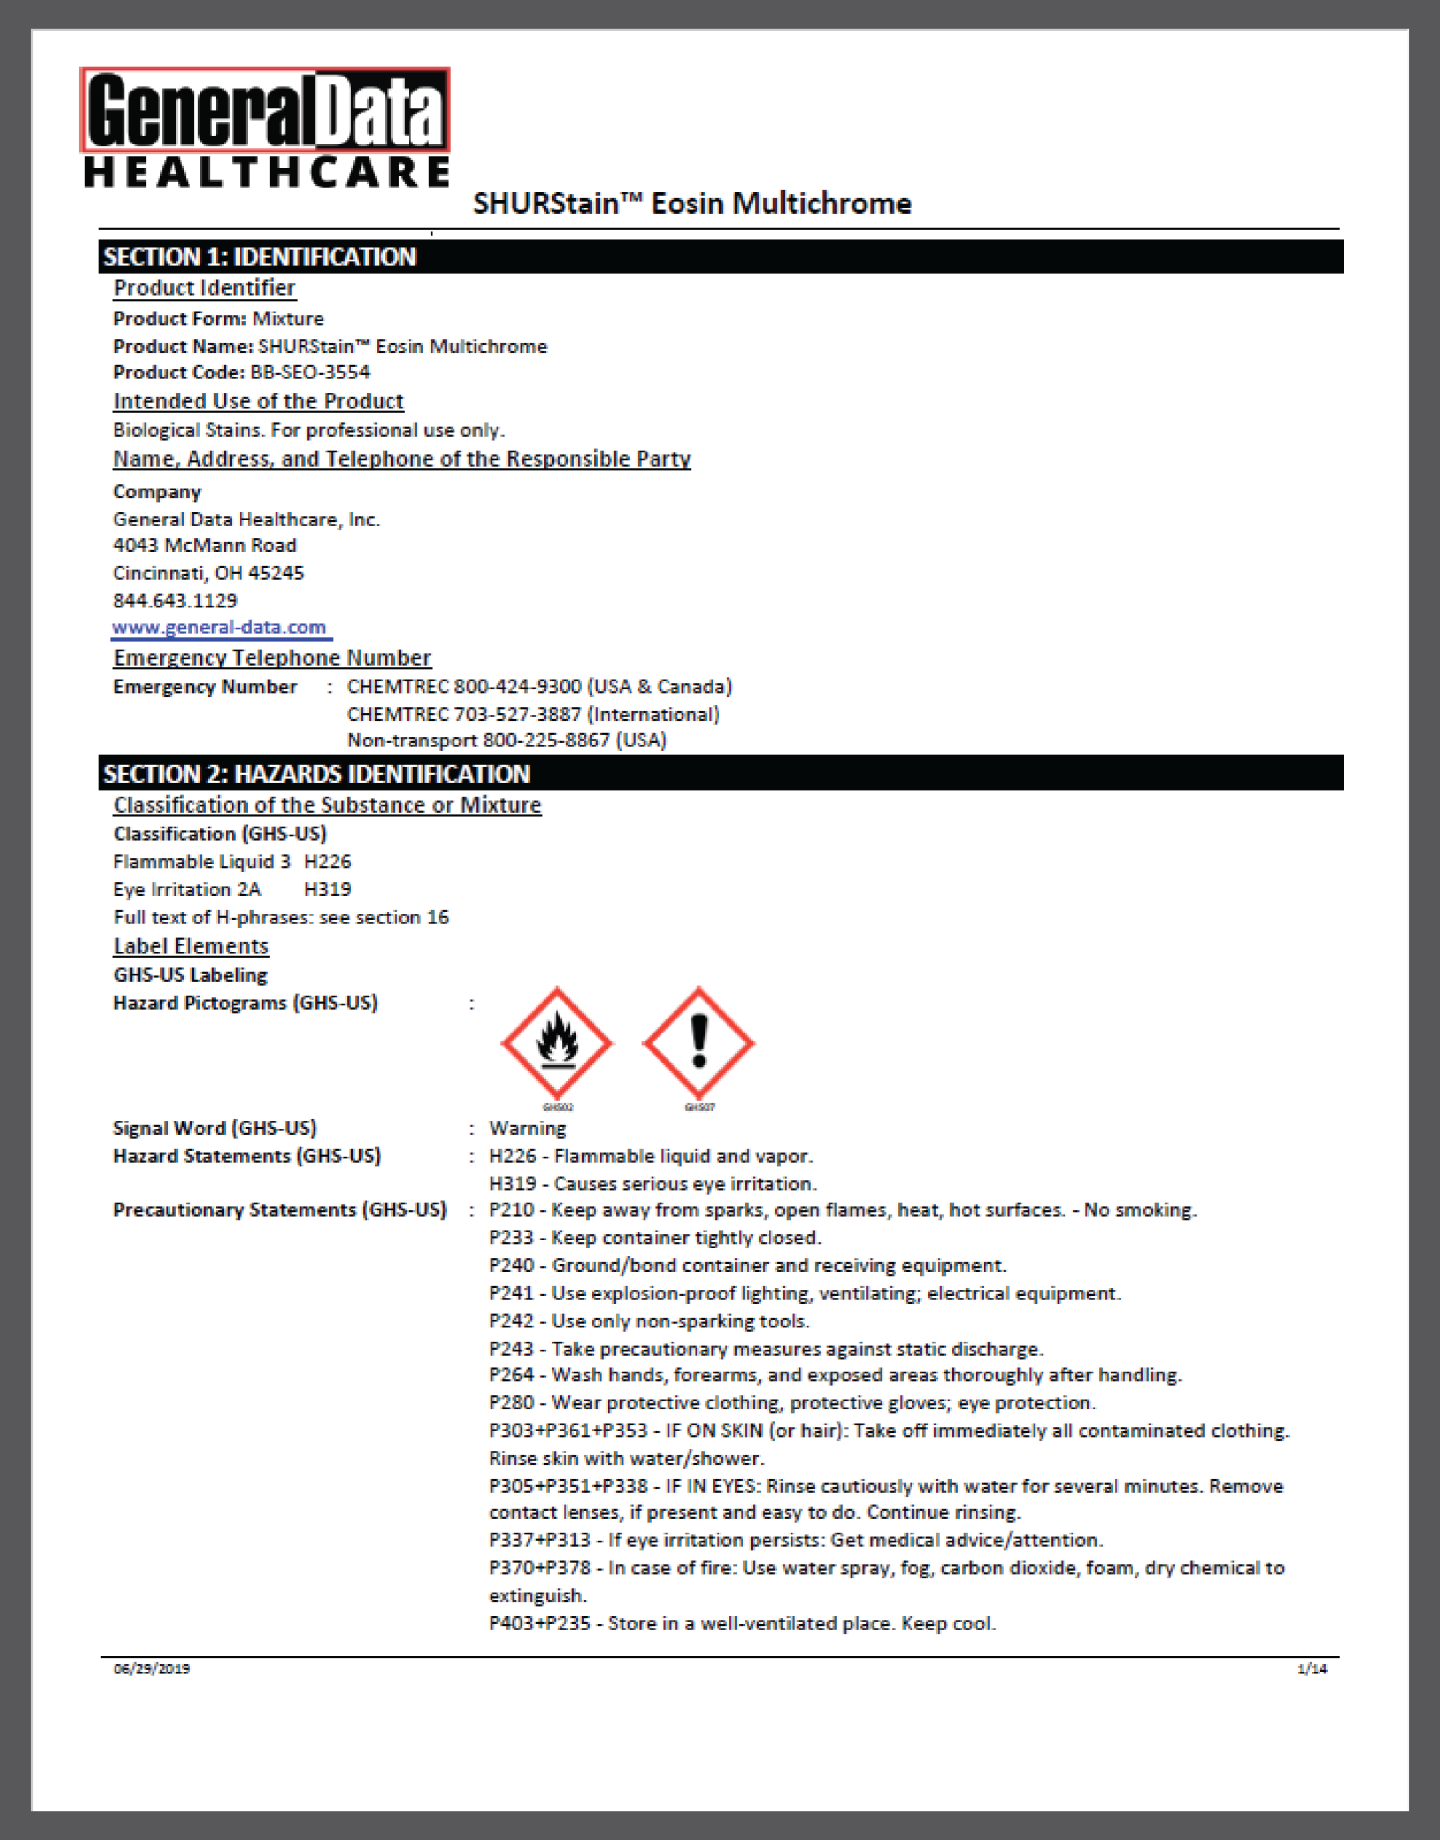 SHURStain Eosin Multichrome Safety Data Sheet